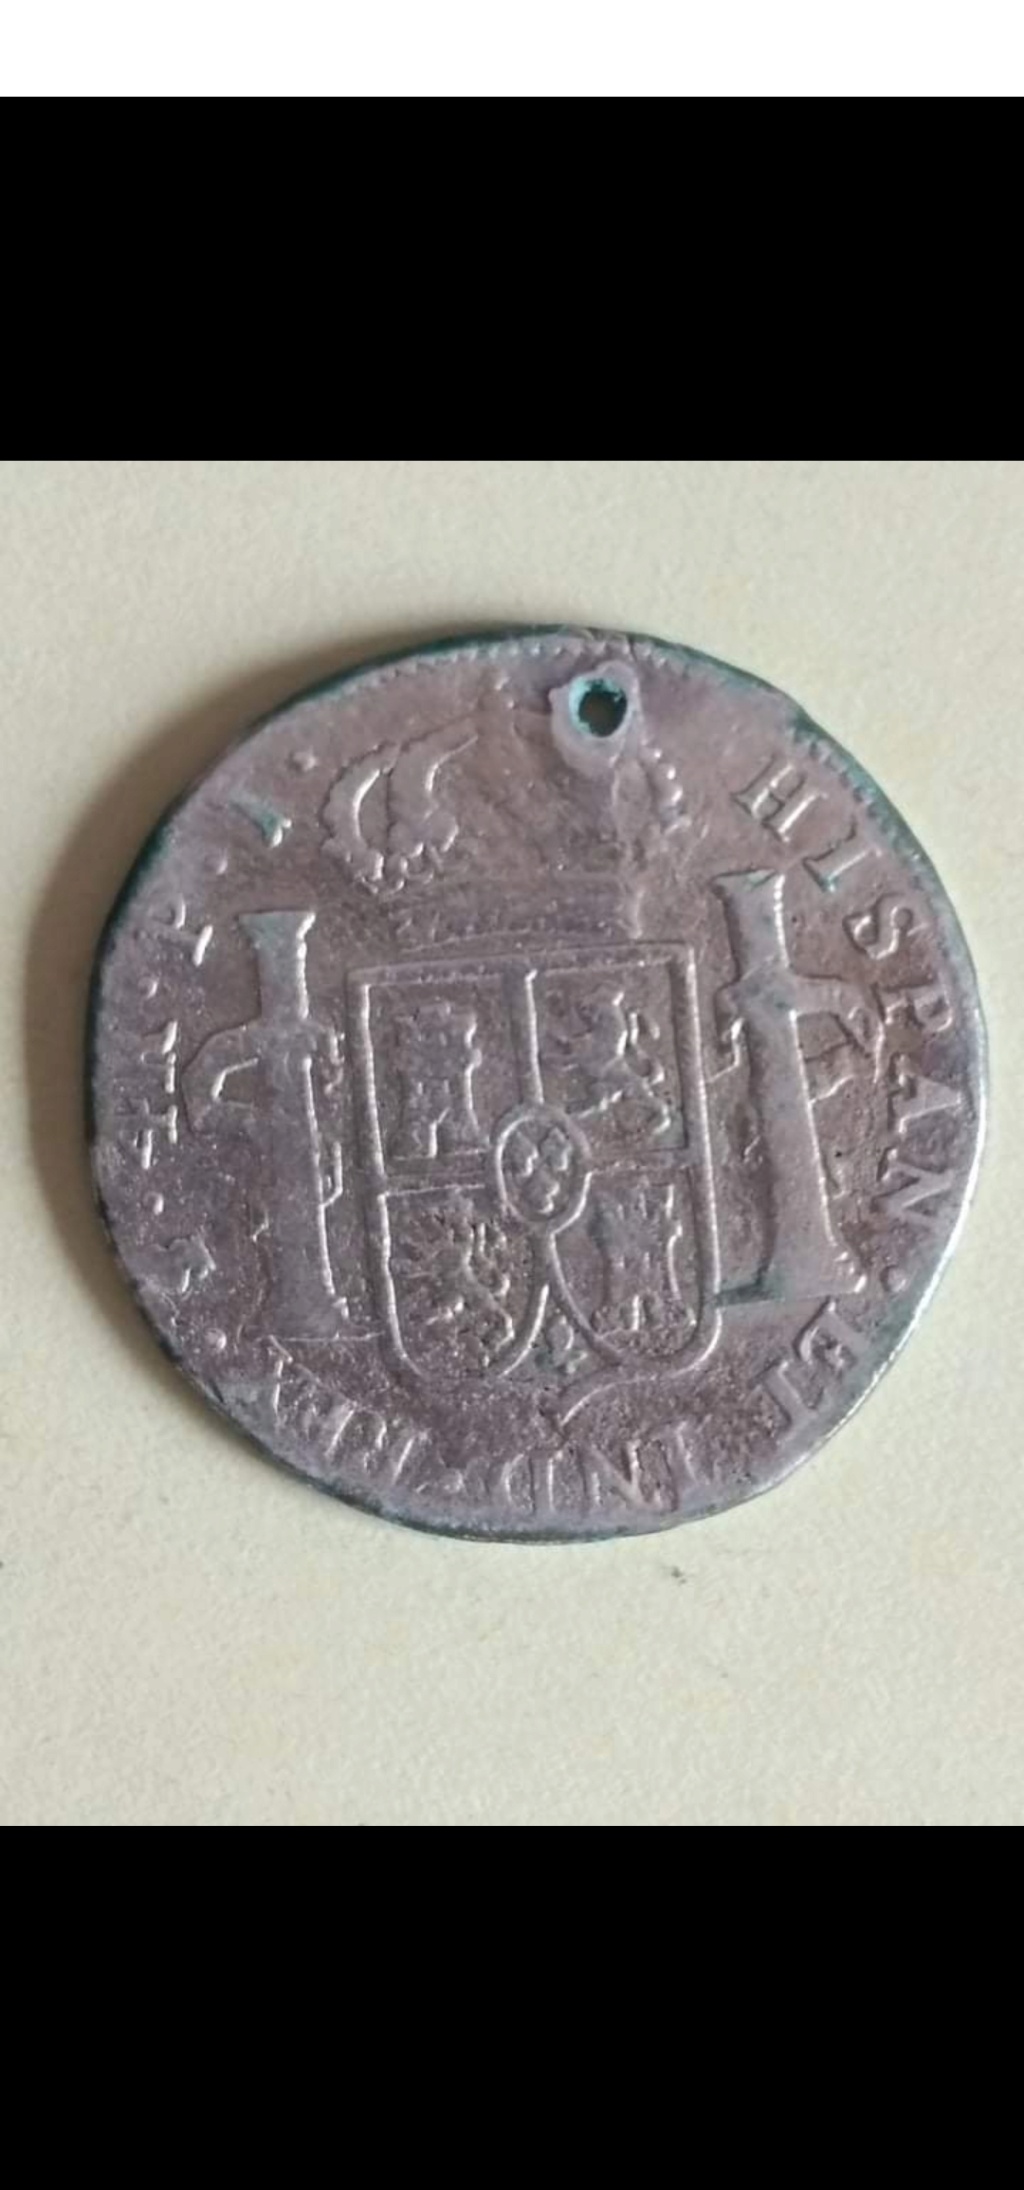 Autentificacion de 2 monedas de 4 reales de Carlos III y IV Screen13